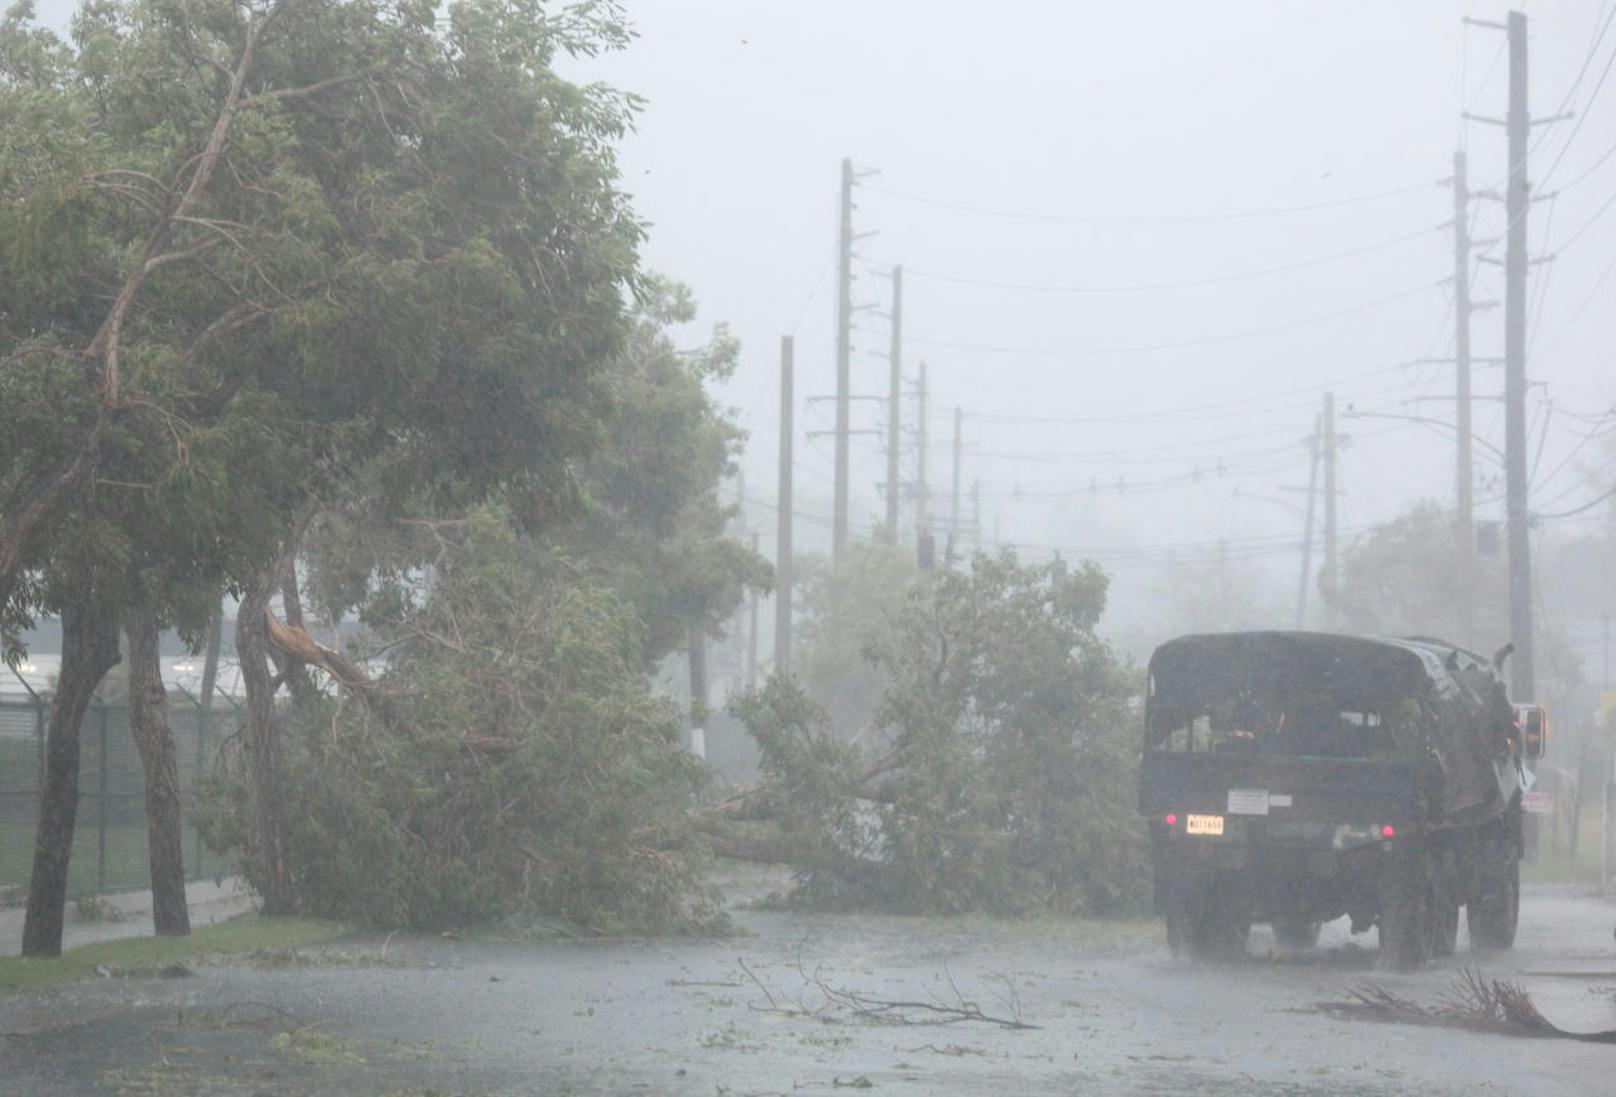 Hurrikan Irma traf mit voller Wucht auf Puerto Rico.